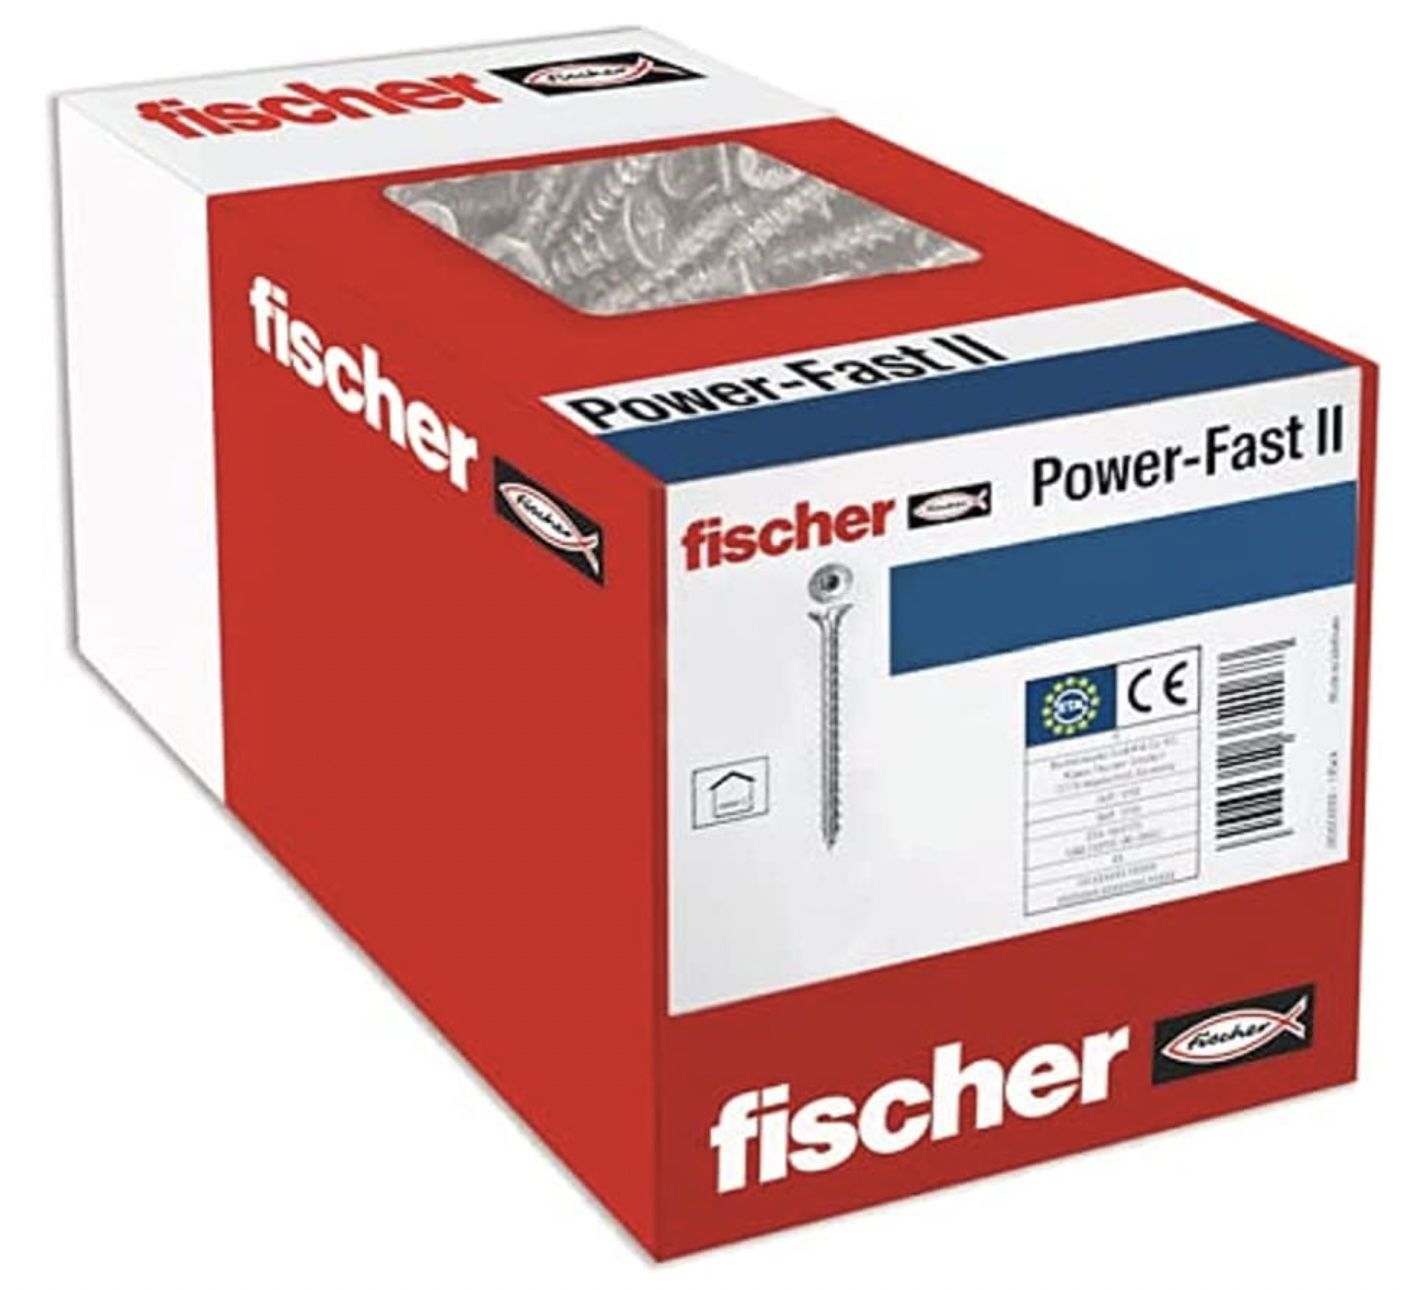 2x 200er Pack fischer PowerFast II CTF 3,0 x 20 Spanplattenschrauben für 5,98€ (statt 12€)